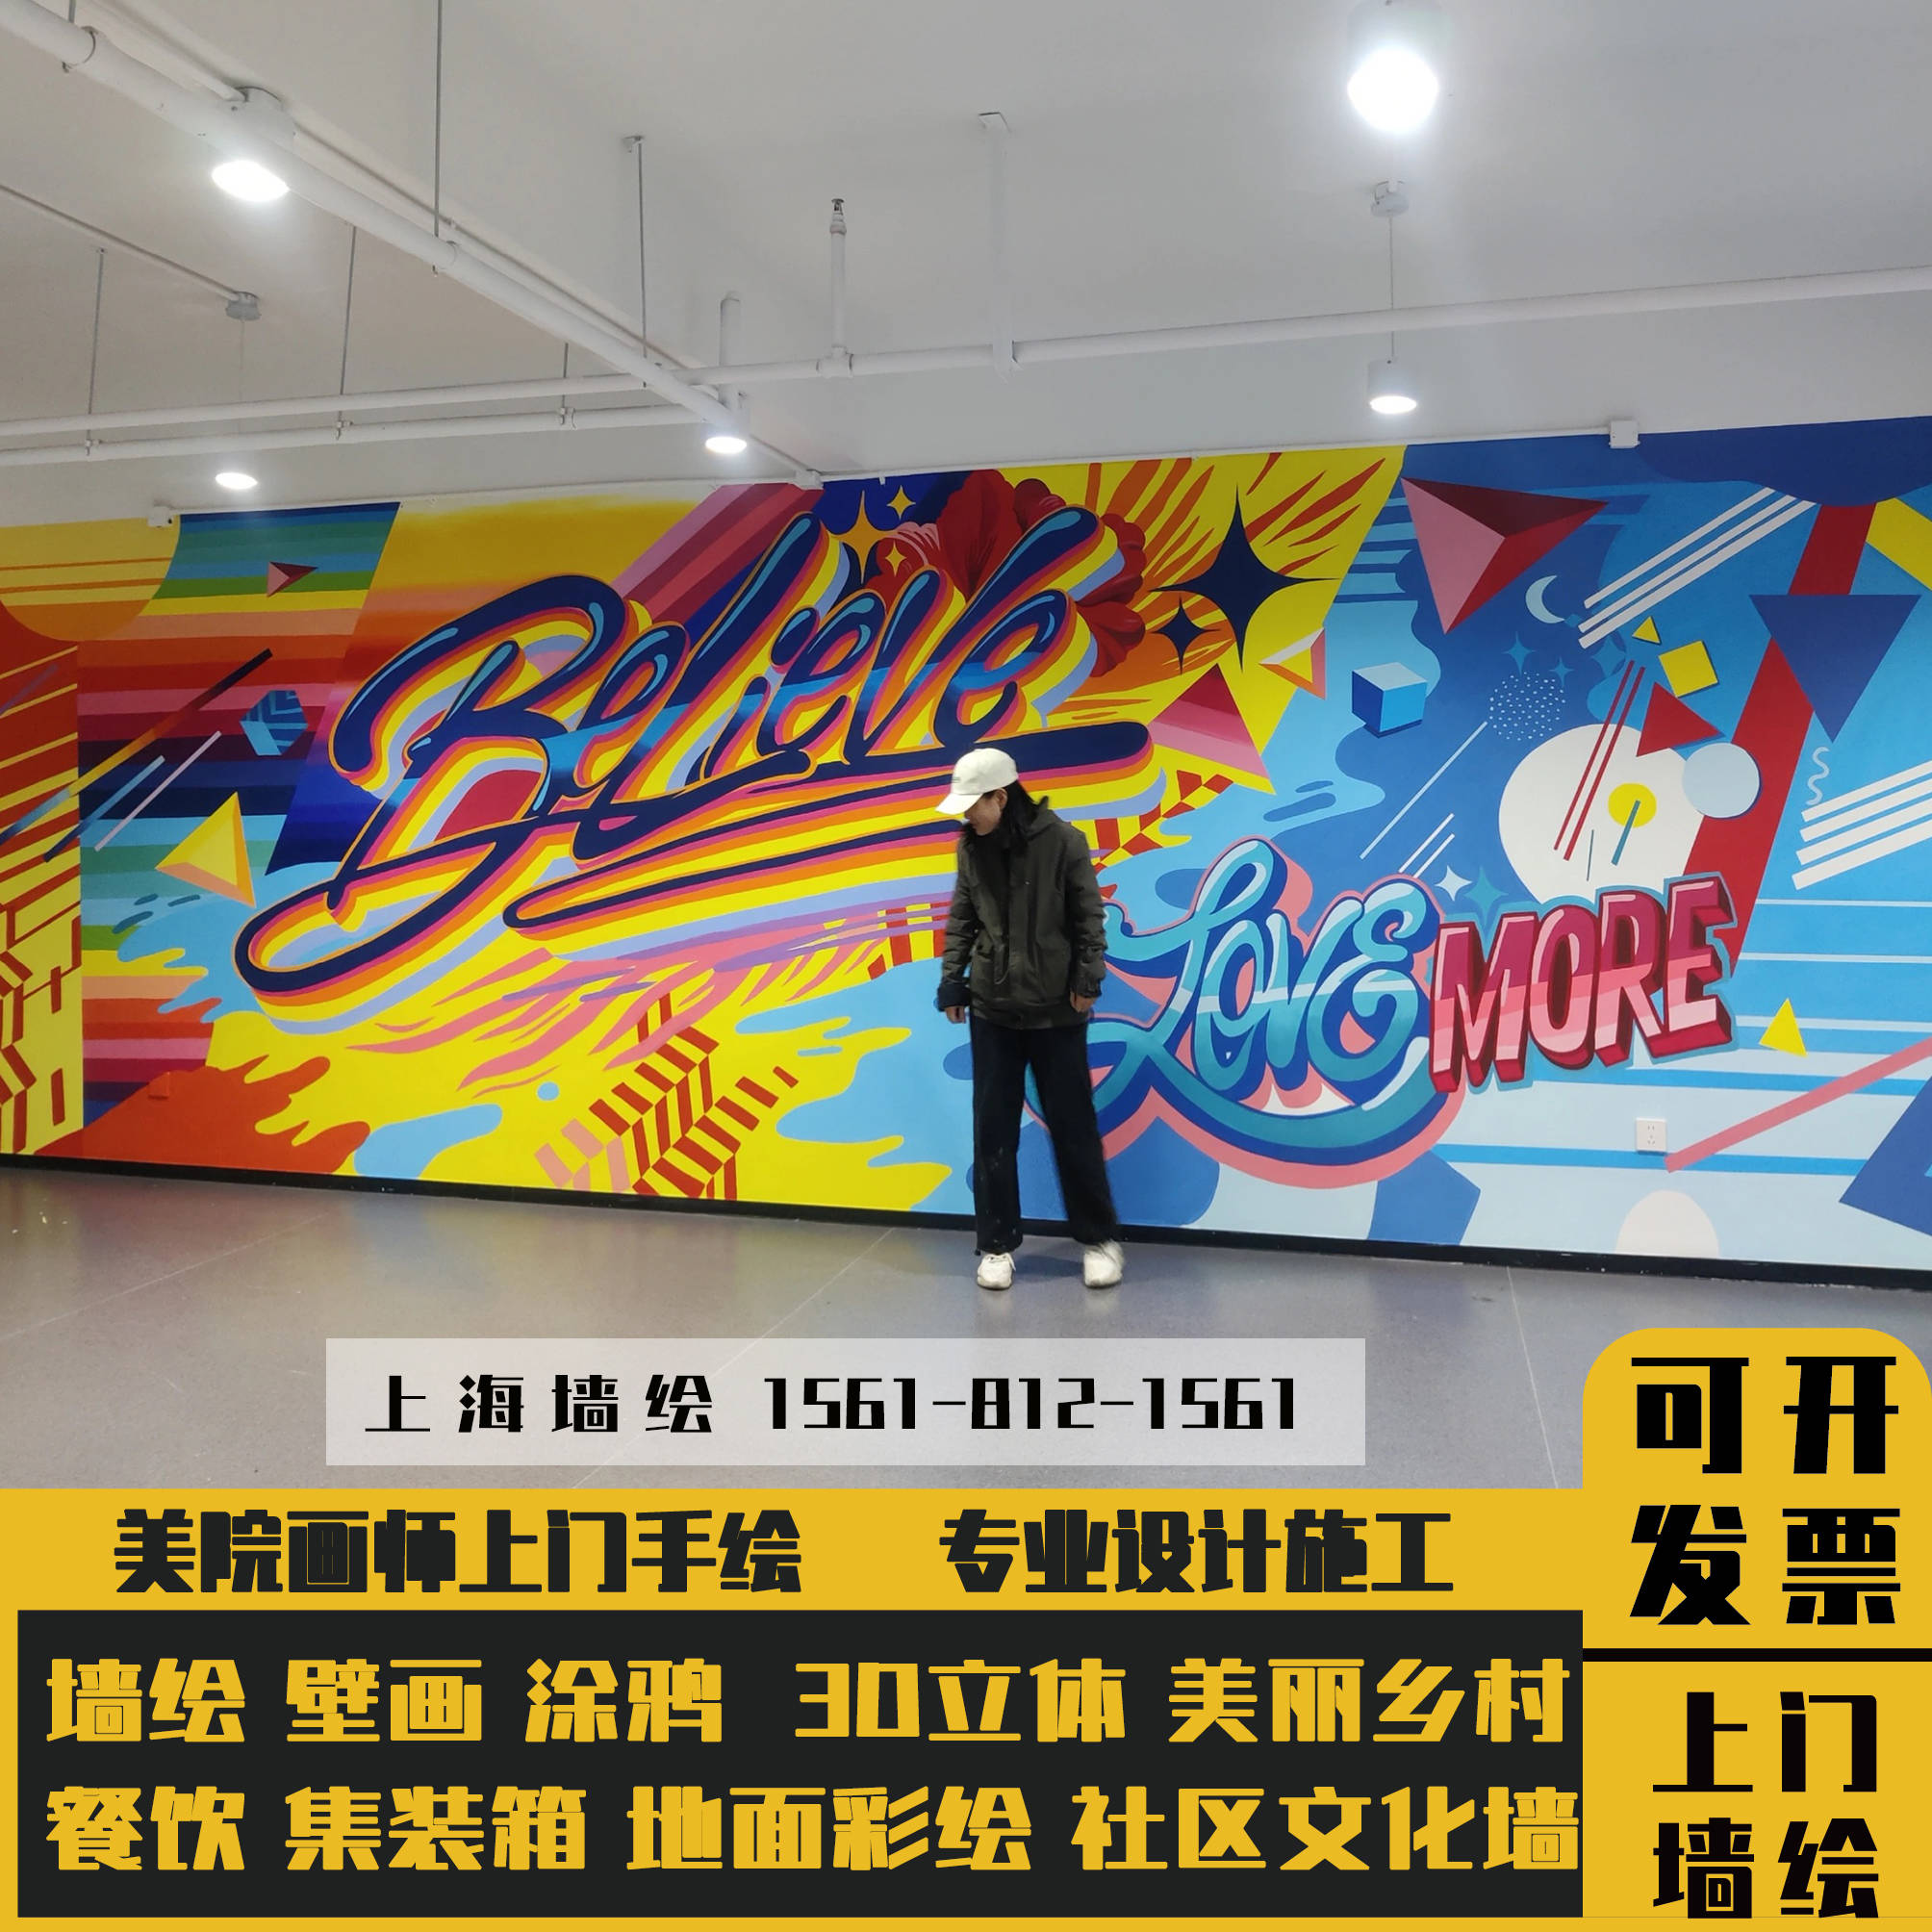 上海装修上门餐厅幼儿园涂鸦立体画壁布背景墙装饰设计墙体彩绘